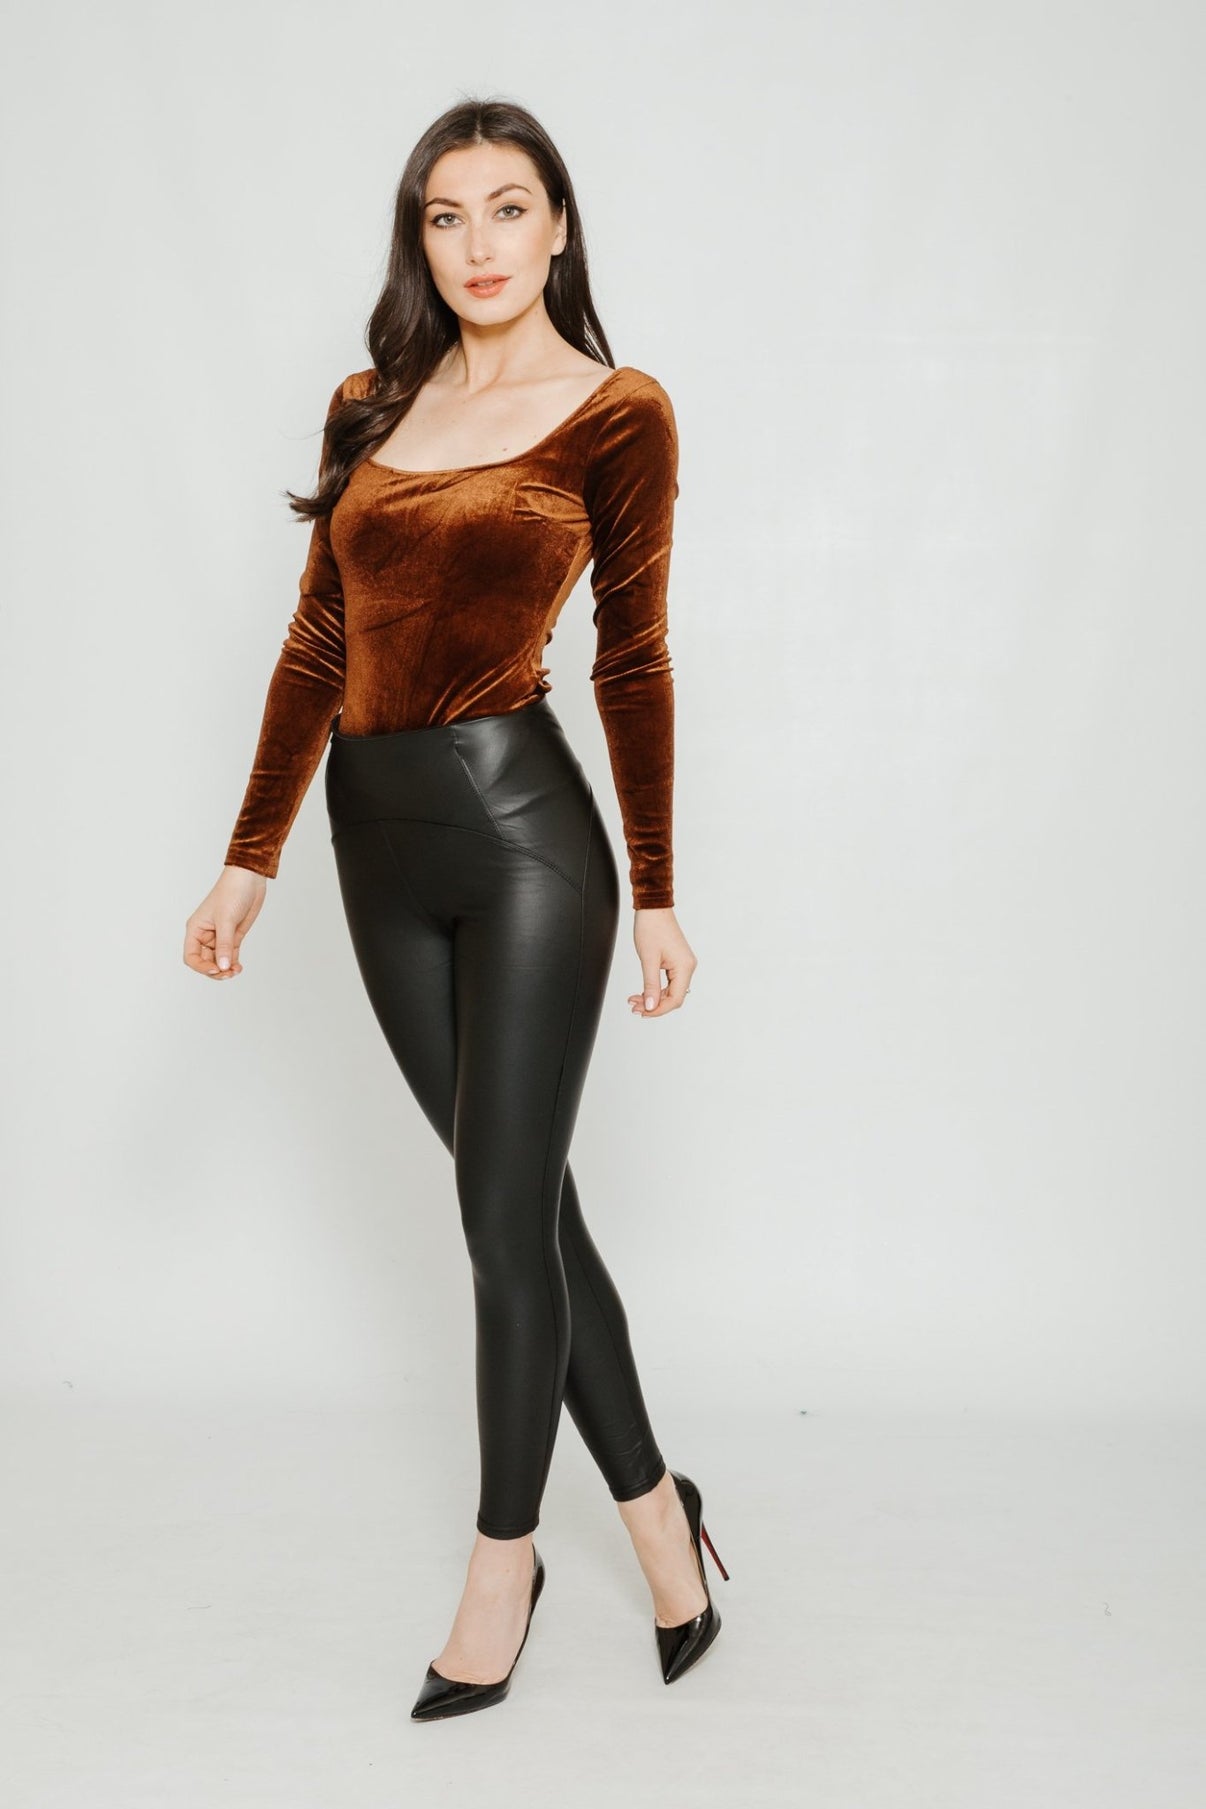 Kate Velvet Bodysuit In Chocolate – The Walk in Wardrobe